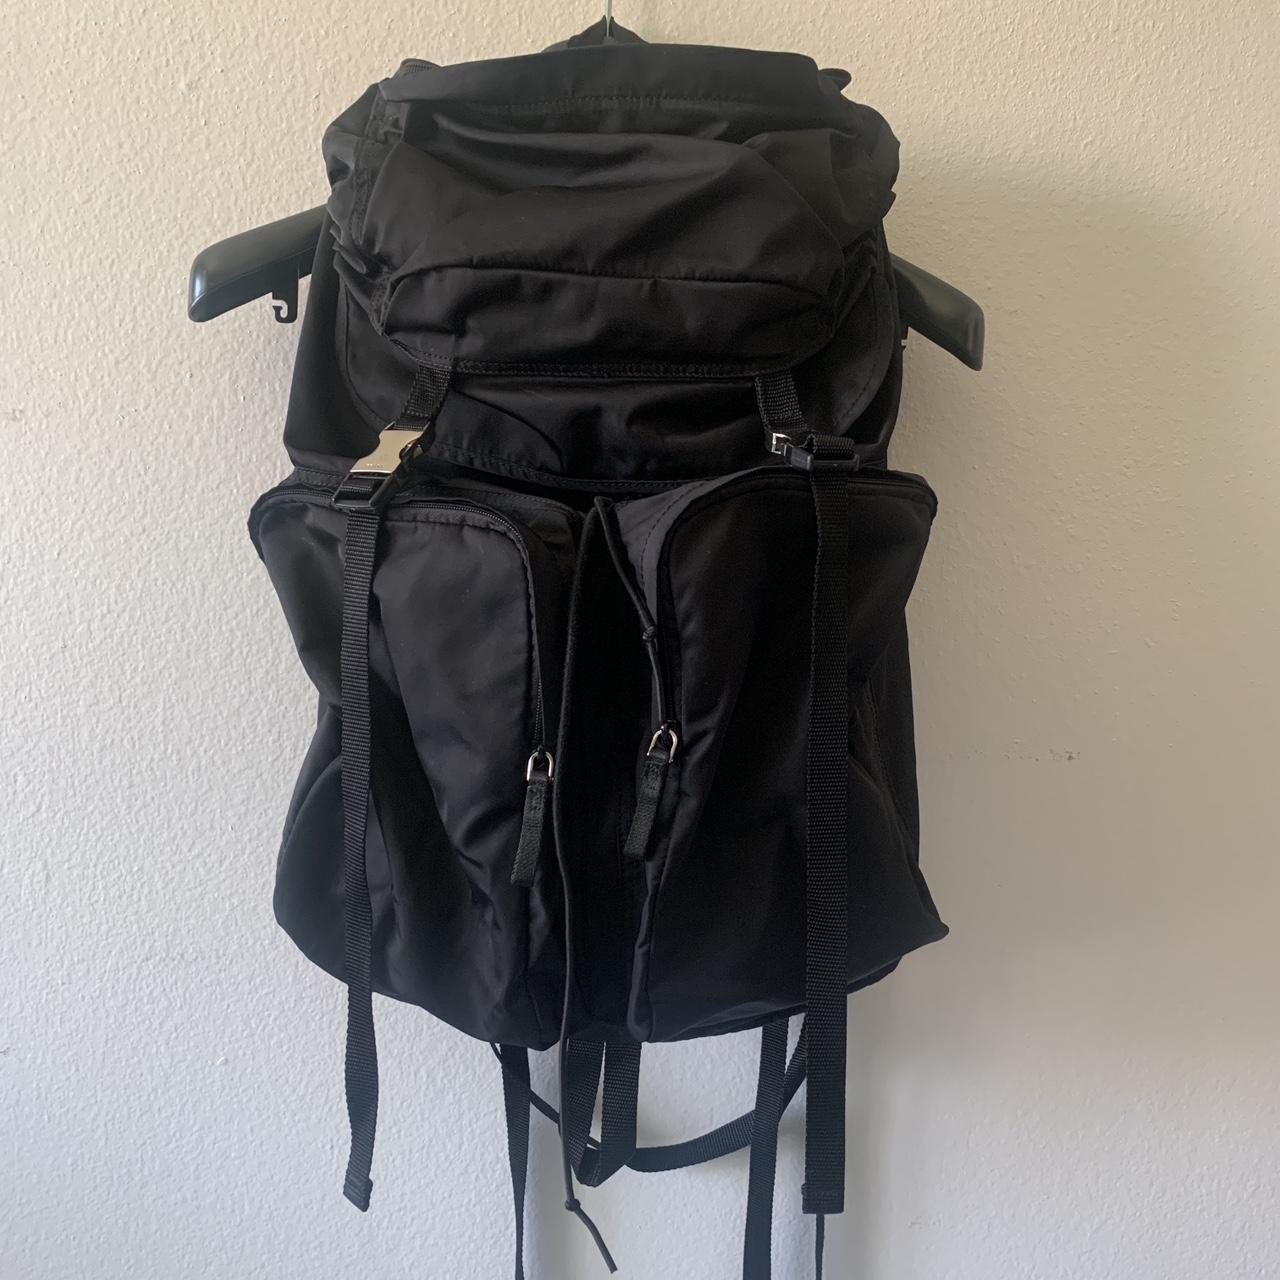 Men's Prada Bags & Backpacks